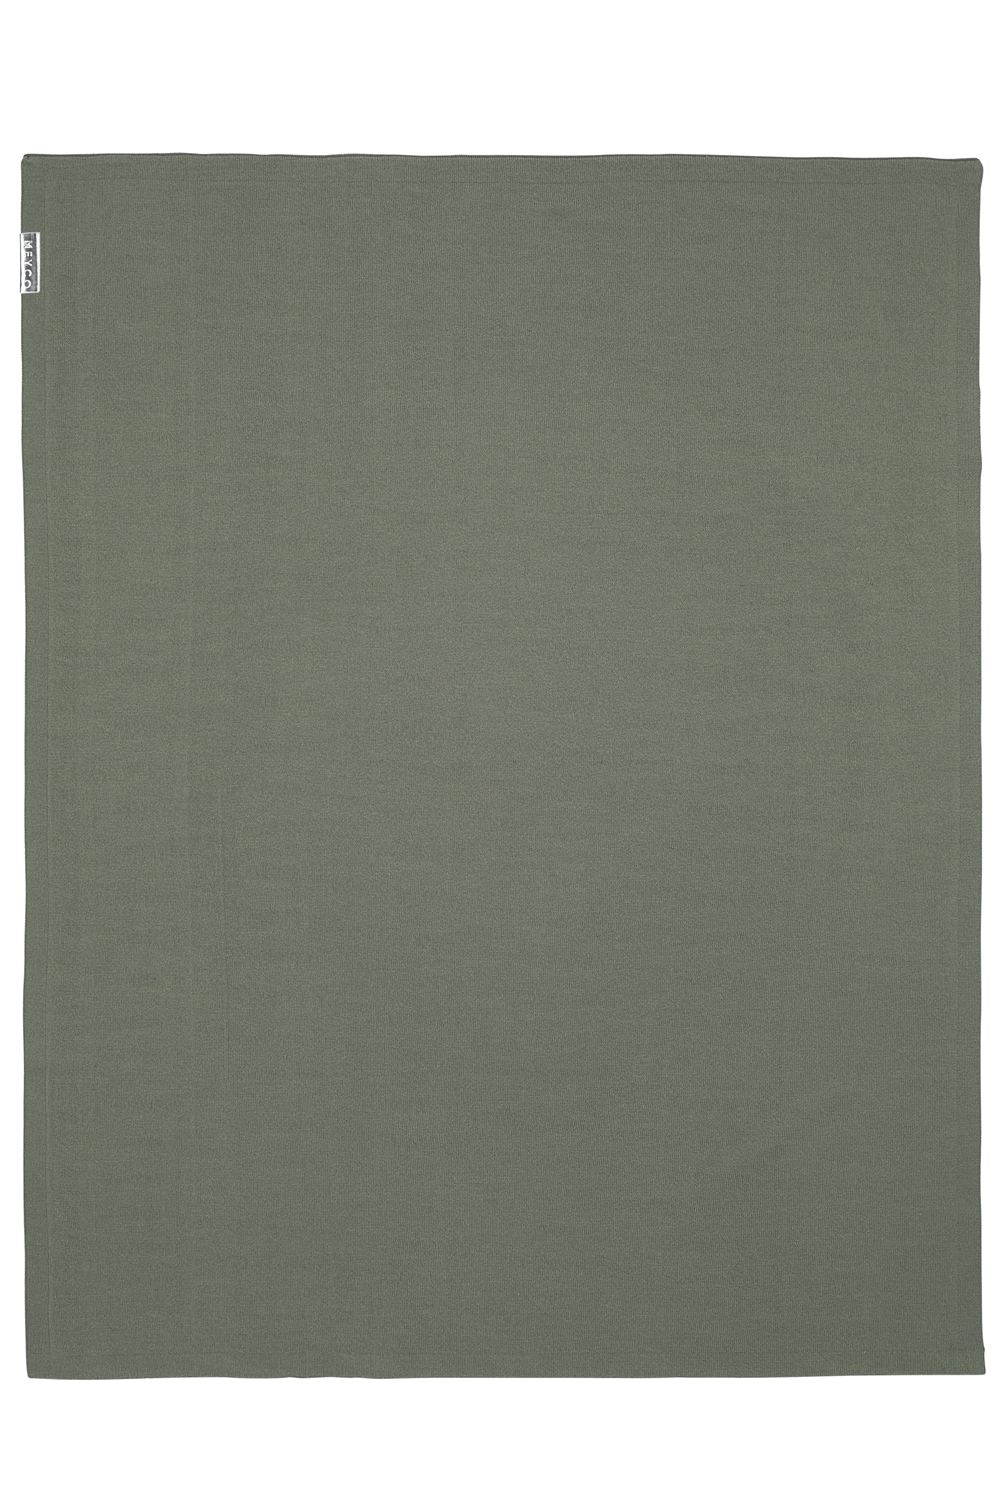 Wiegdeken Knit Basic - Forest Green - 75x100cm